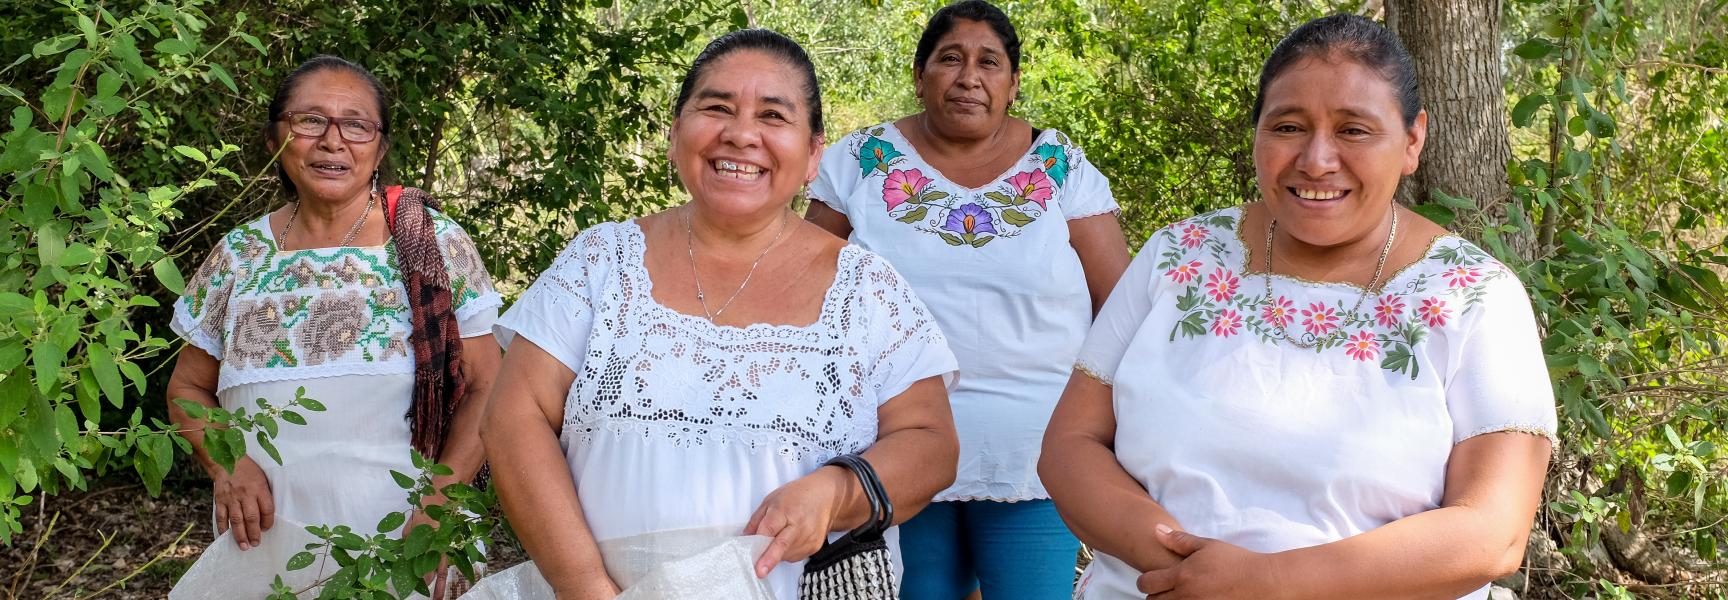 Des femmes rurales qui sourient au Mexique